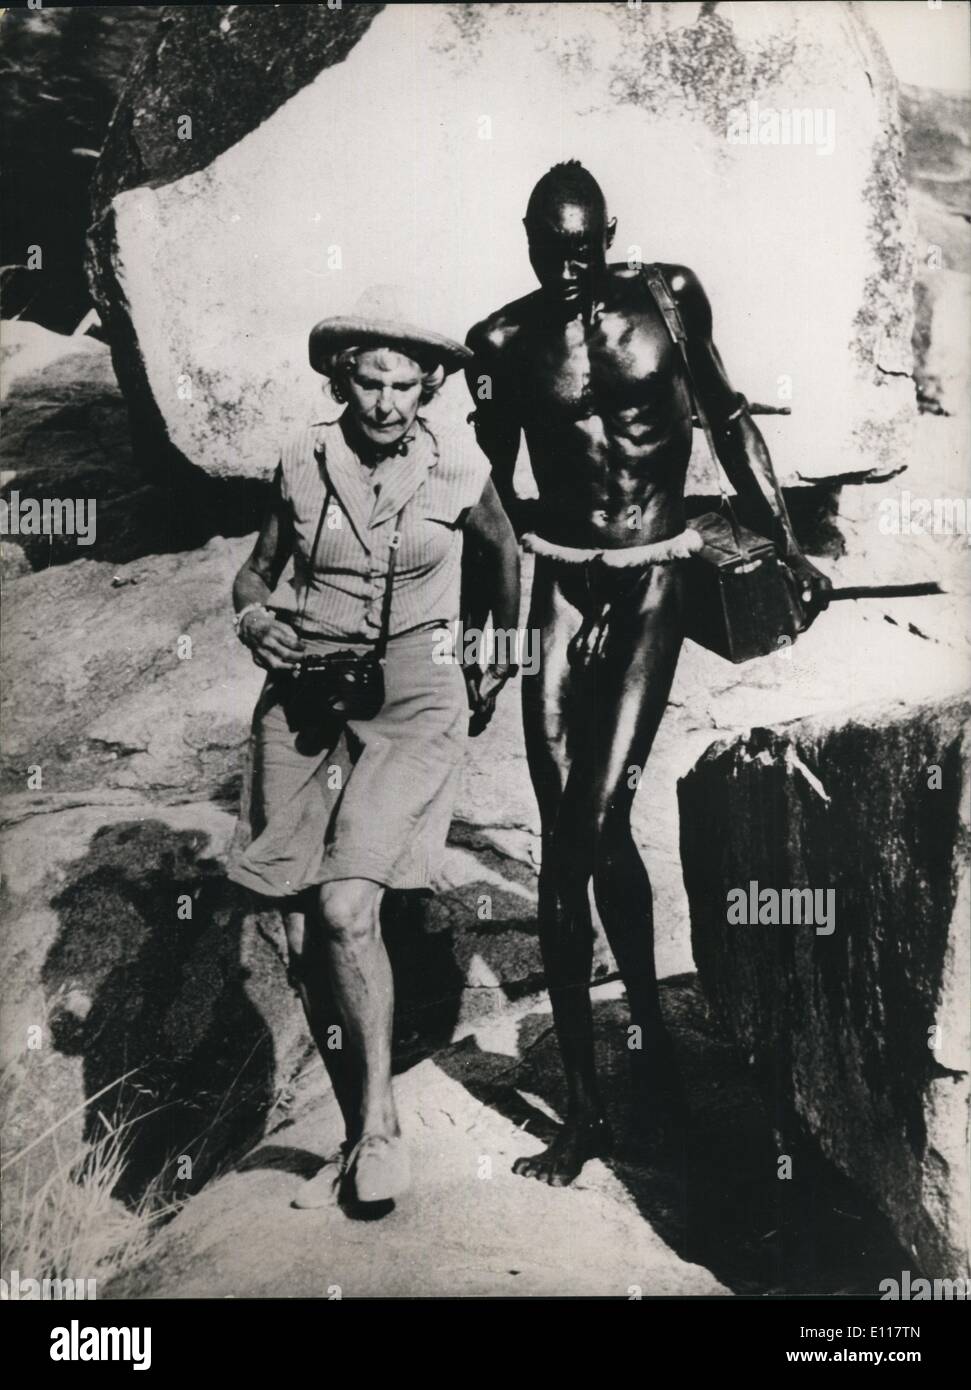 Avril 04, 1976 - Gold Award pour l'allemand : Leni Riefenstahl Leni Riefenstahl, le photographe allemand, a reçu une médaille d'or par l'Art Directors Club de l'Allemagne pour le meilleur les œuvres photographiques de 1975. Le prix a été remis pour ses photos sensationnelles de la tribu nouba qui seront publiés dans un livre illustré, appelé ''Les Nouba de Kau'' en août de cette année. Photo montre Leni Riefenstahl photographié pendant son séjour avec les Nuba avec un membre de la tribu qui porte son équipement. Banque D'Images